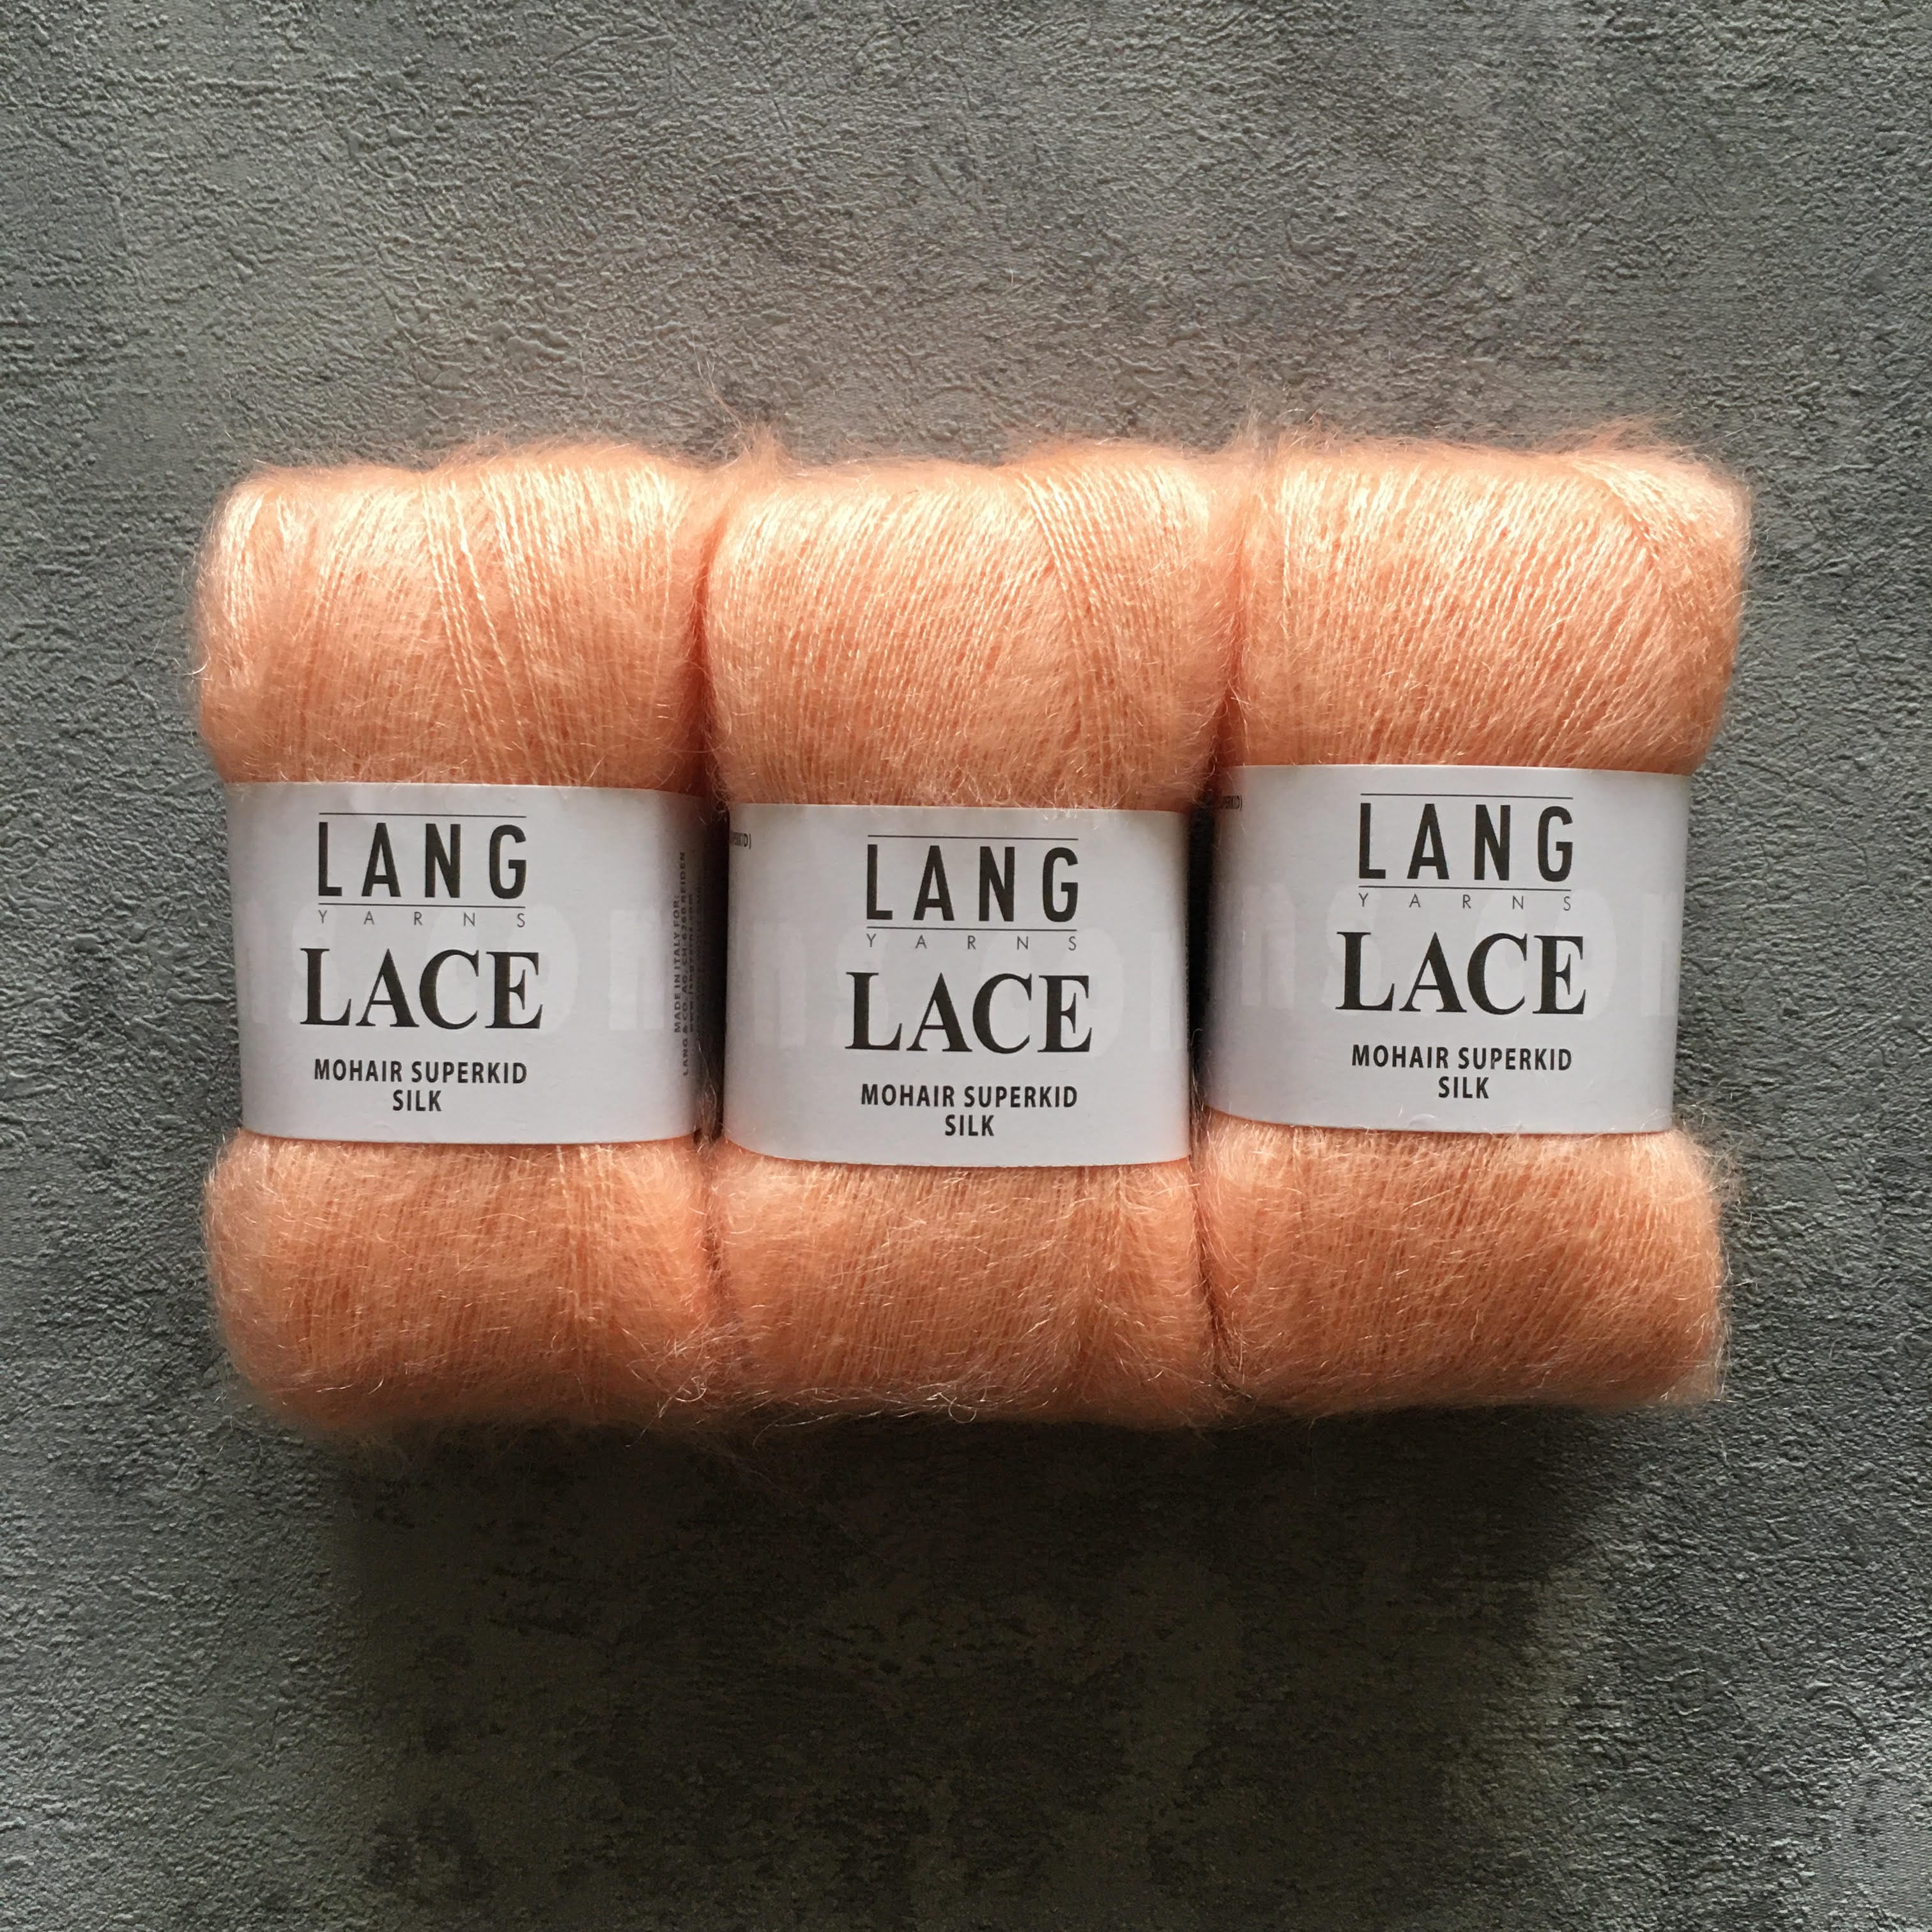 Lang Yarns Lace Silk Mohair